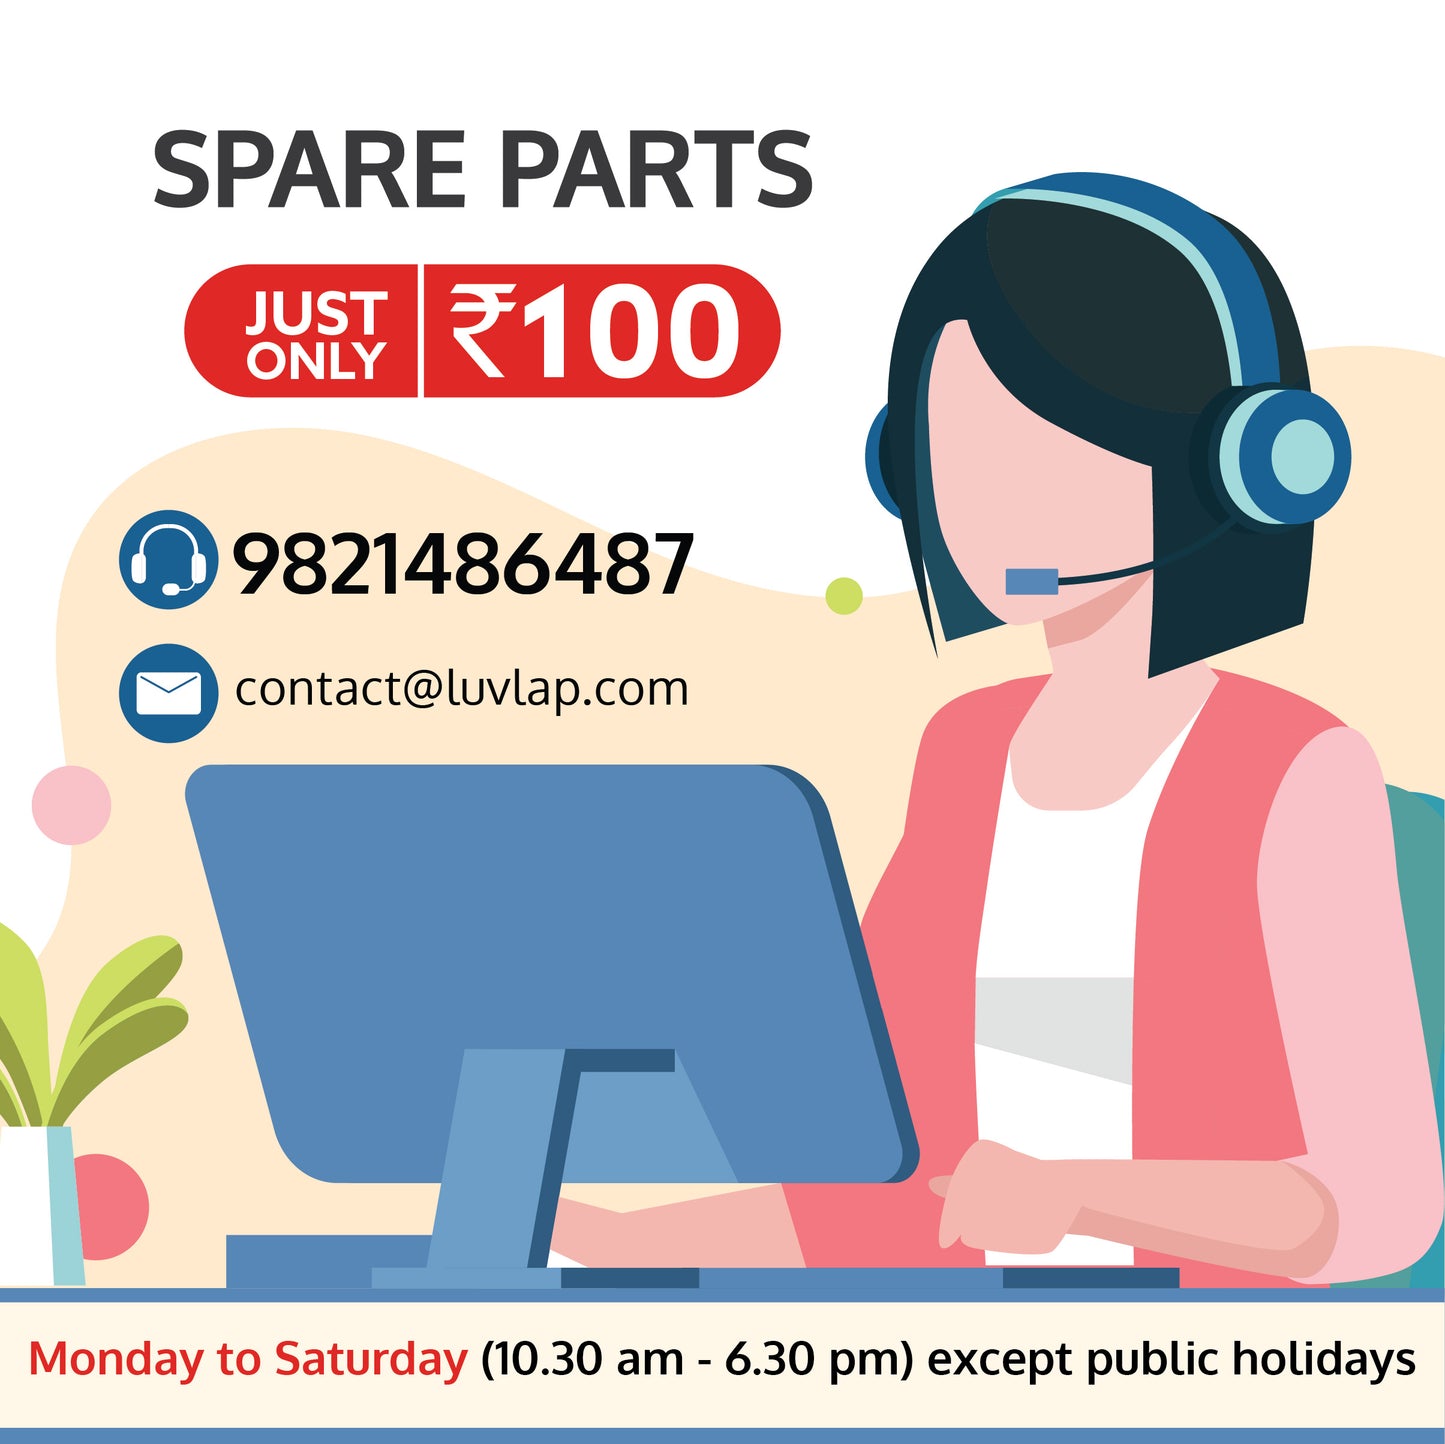 Spare Parts - 100